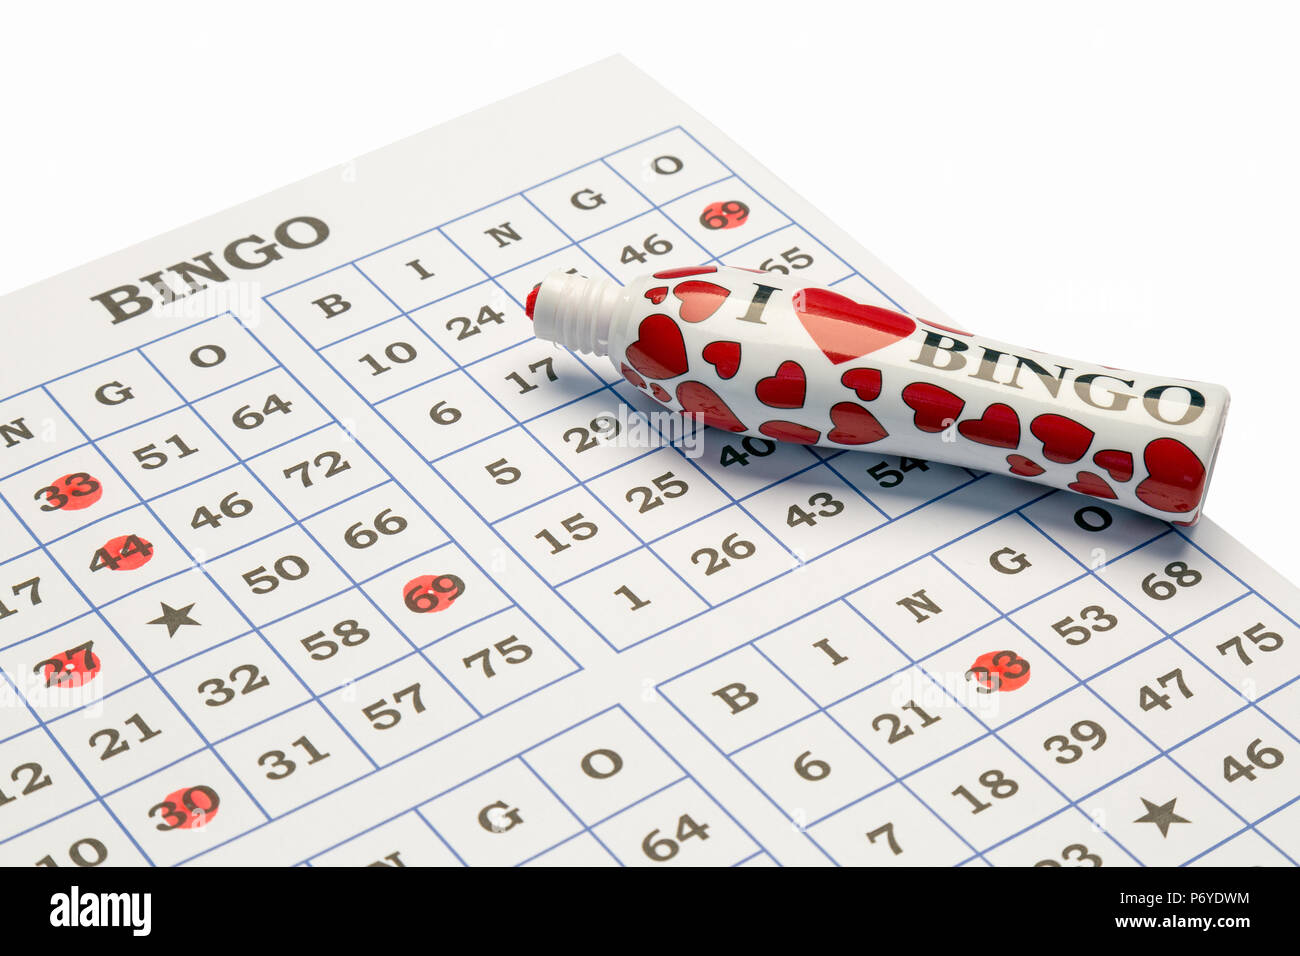 Ich liebe Bingo für Stifte und Visitenkarten auf einem weißen Hintergrund. Stockfoto